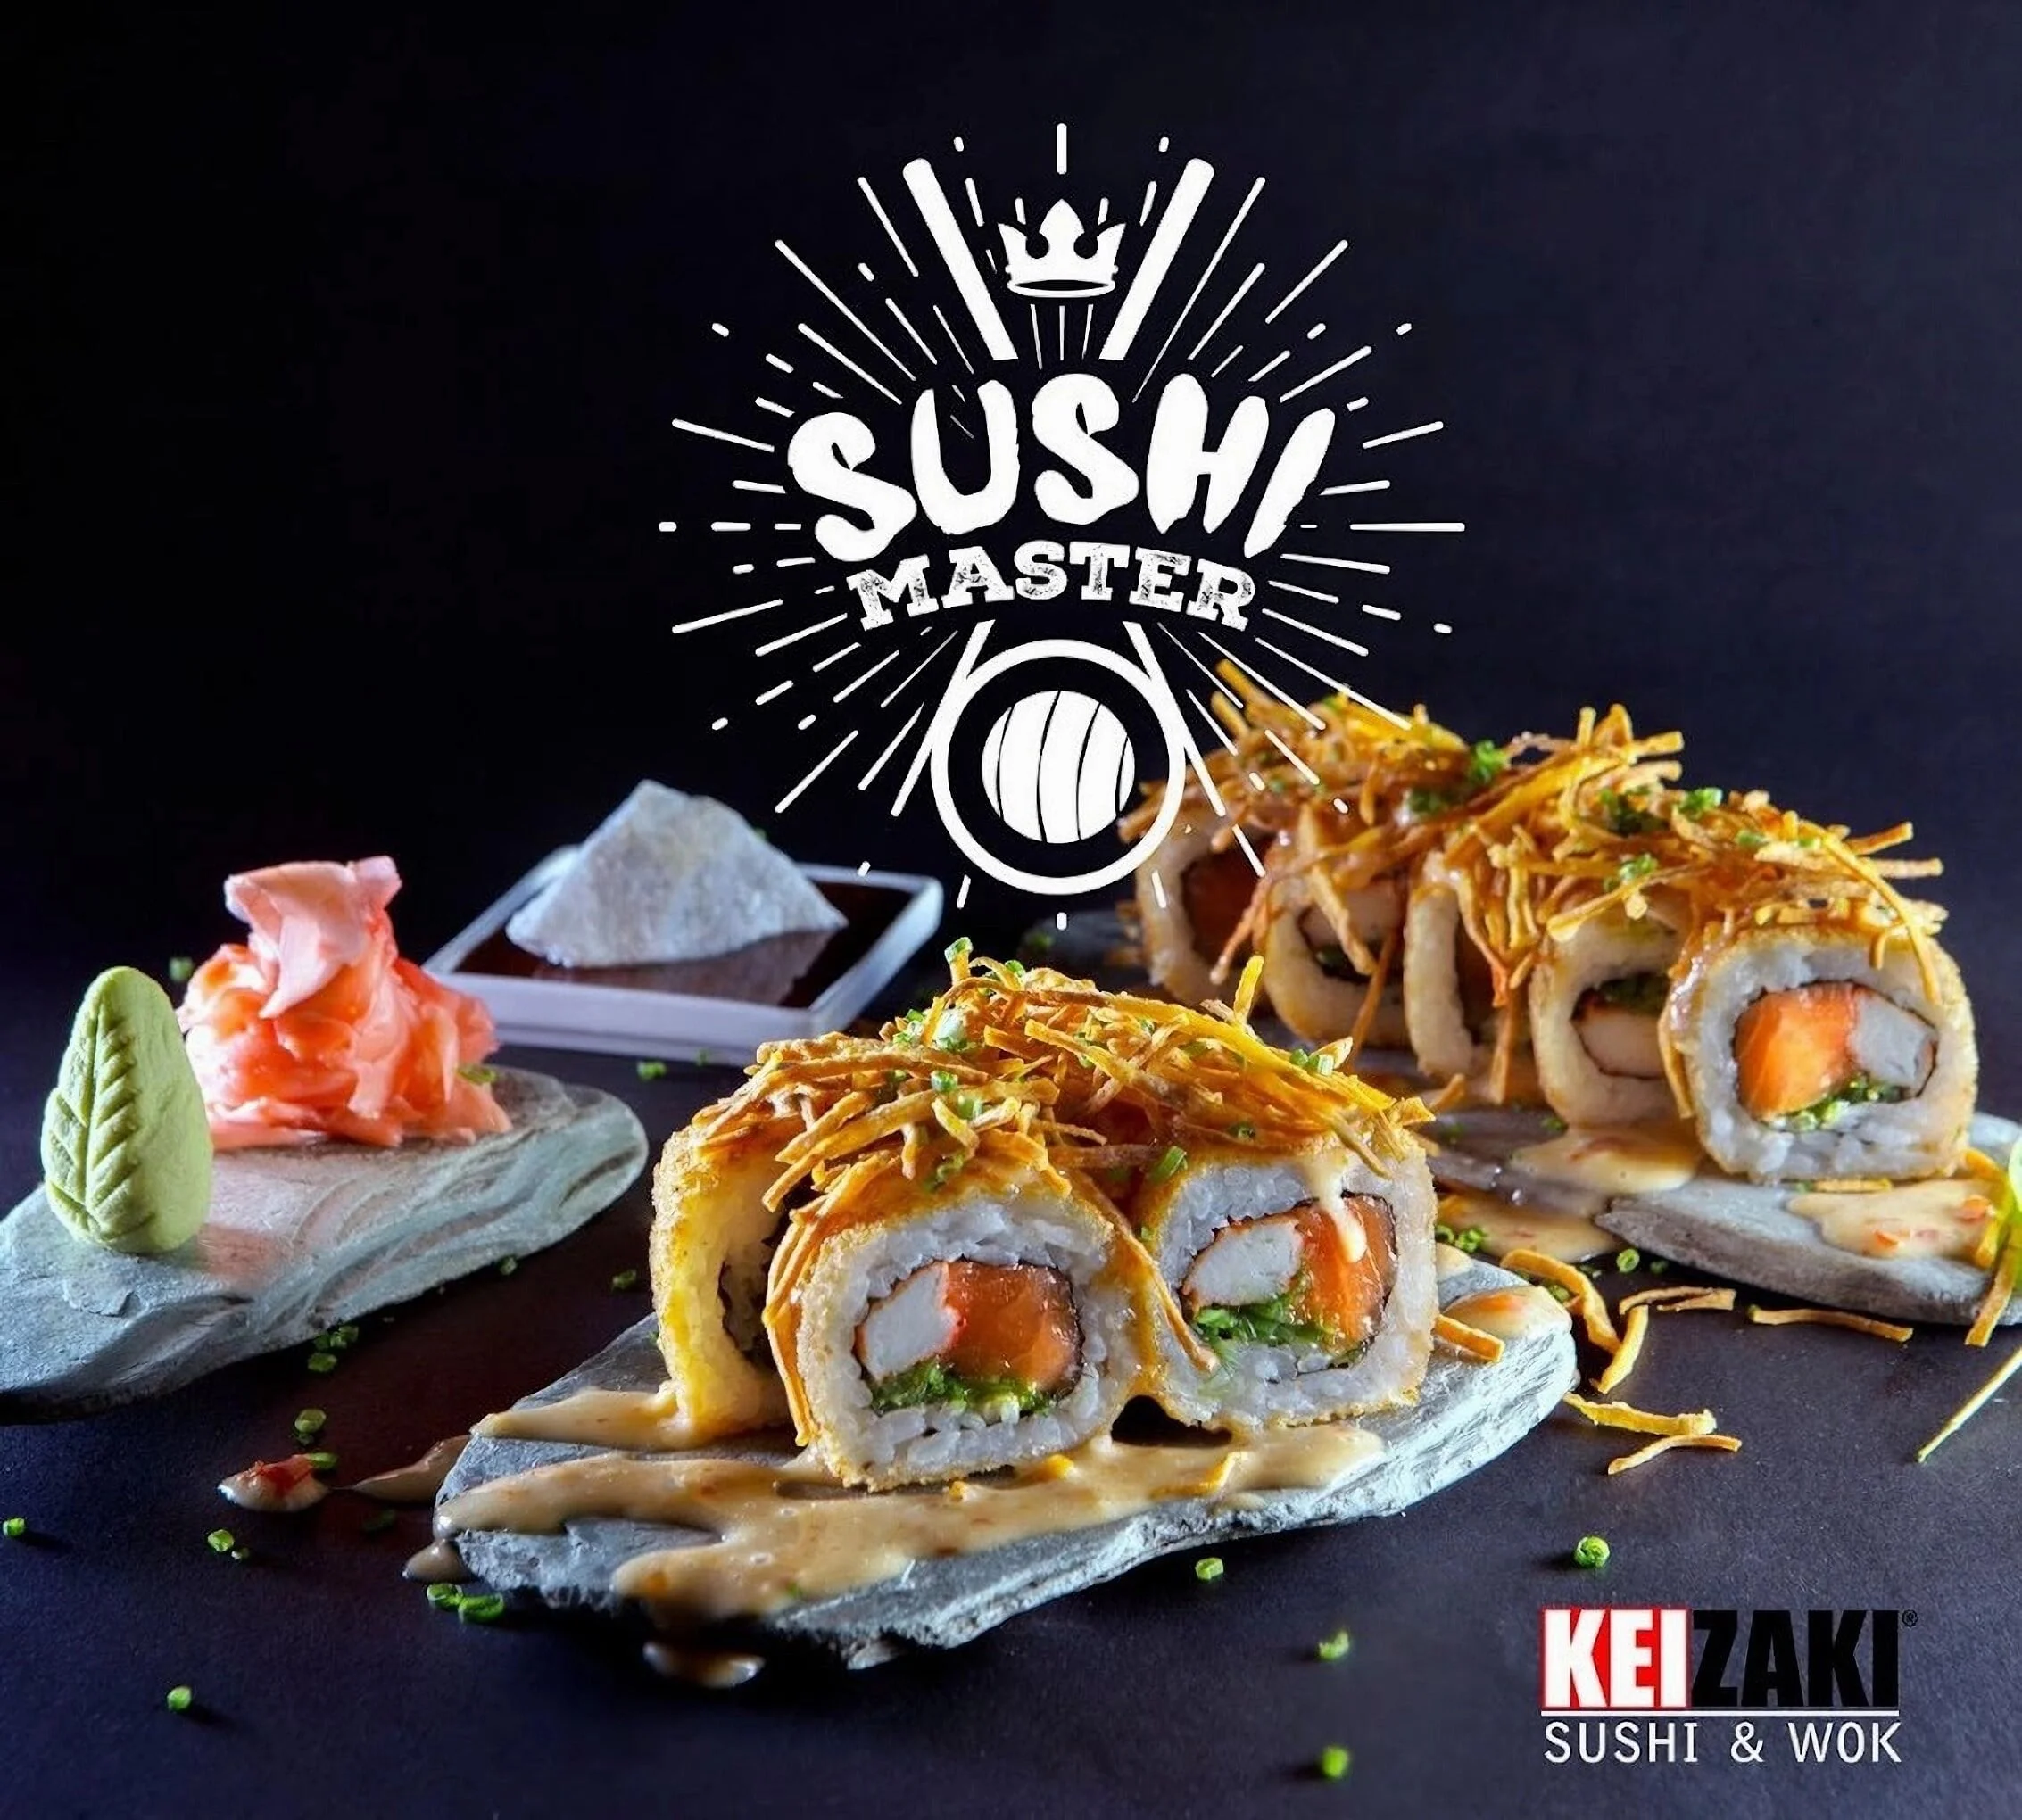 Restaurante-keizaki-sushi-wok-21366